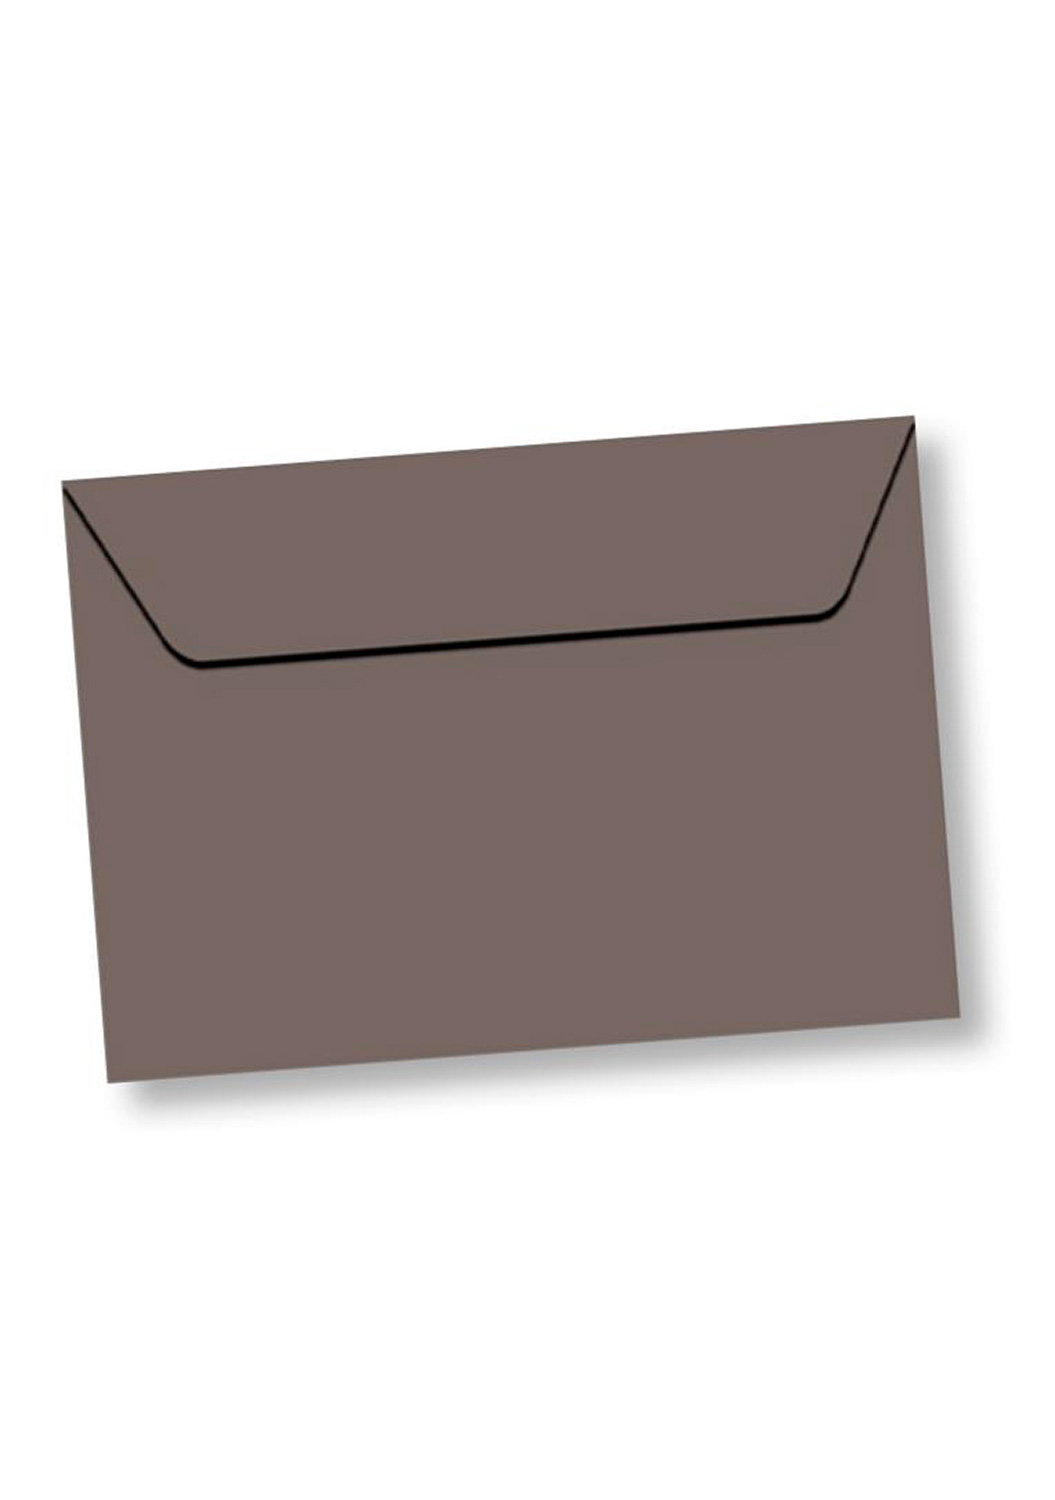 Marcello-art : Cartes de faire part Enveloppe rectangle A5 velin 162x229 mm couleur taupe